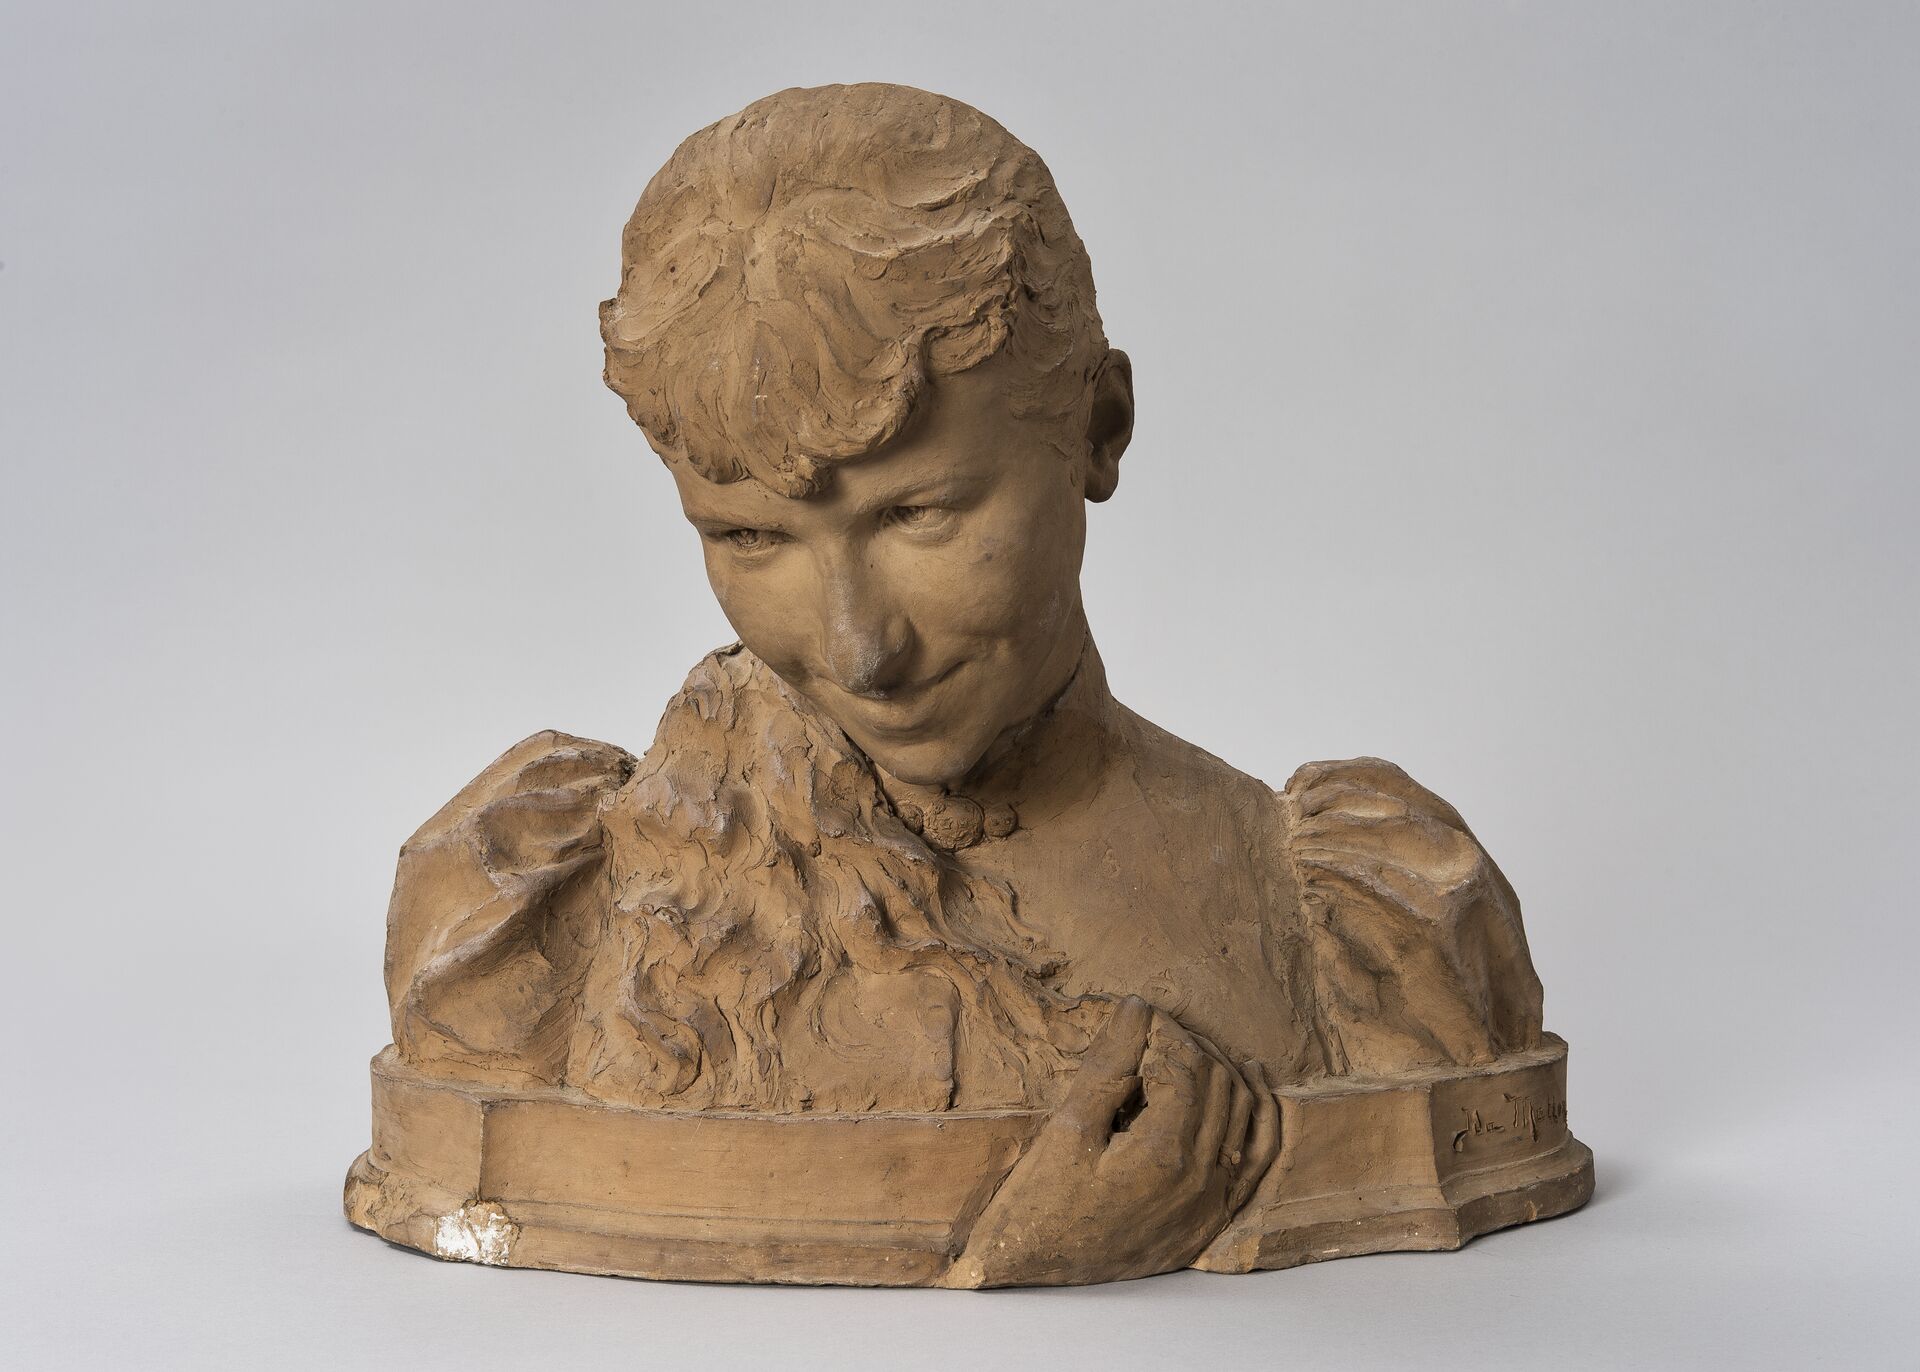 Ida Matton, Sculpted portait of a Woman, 1891